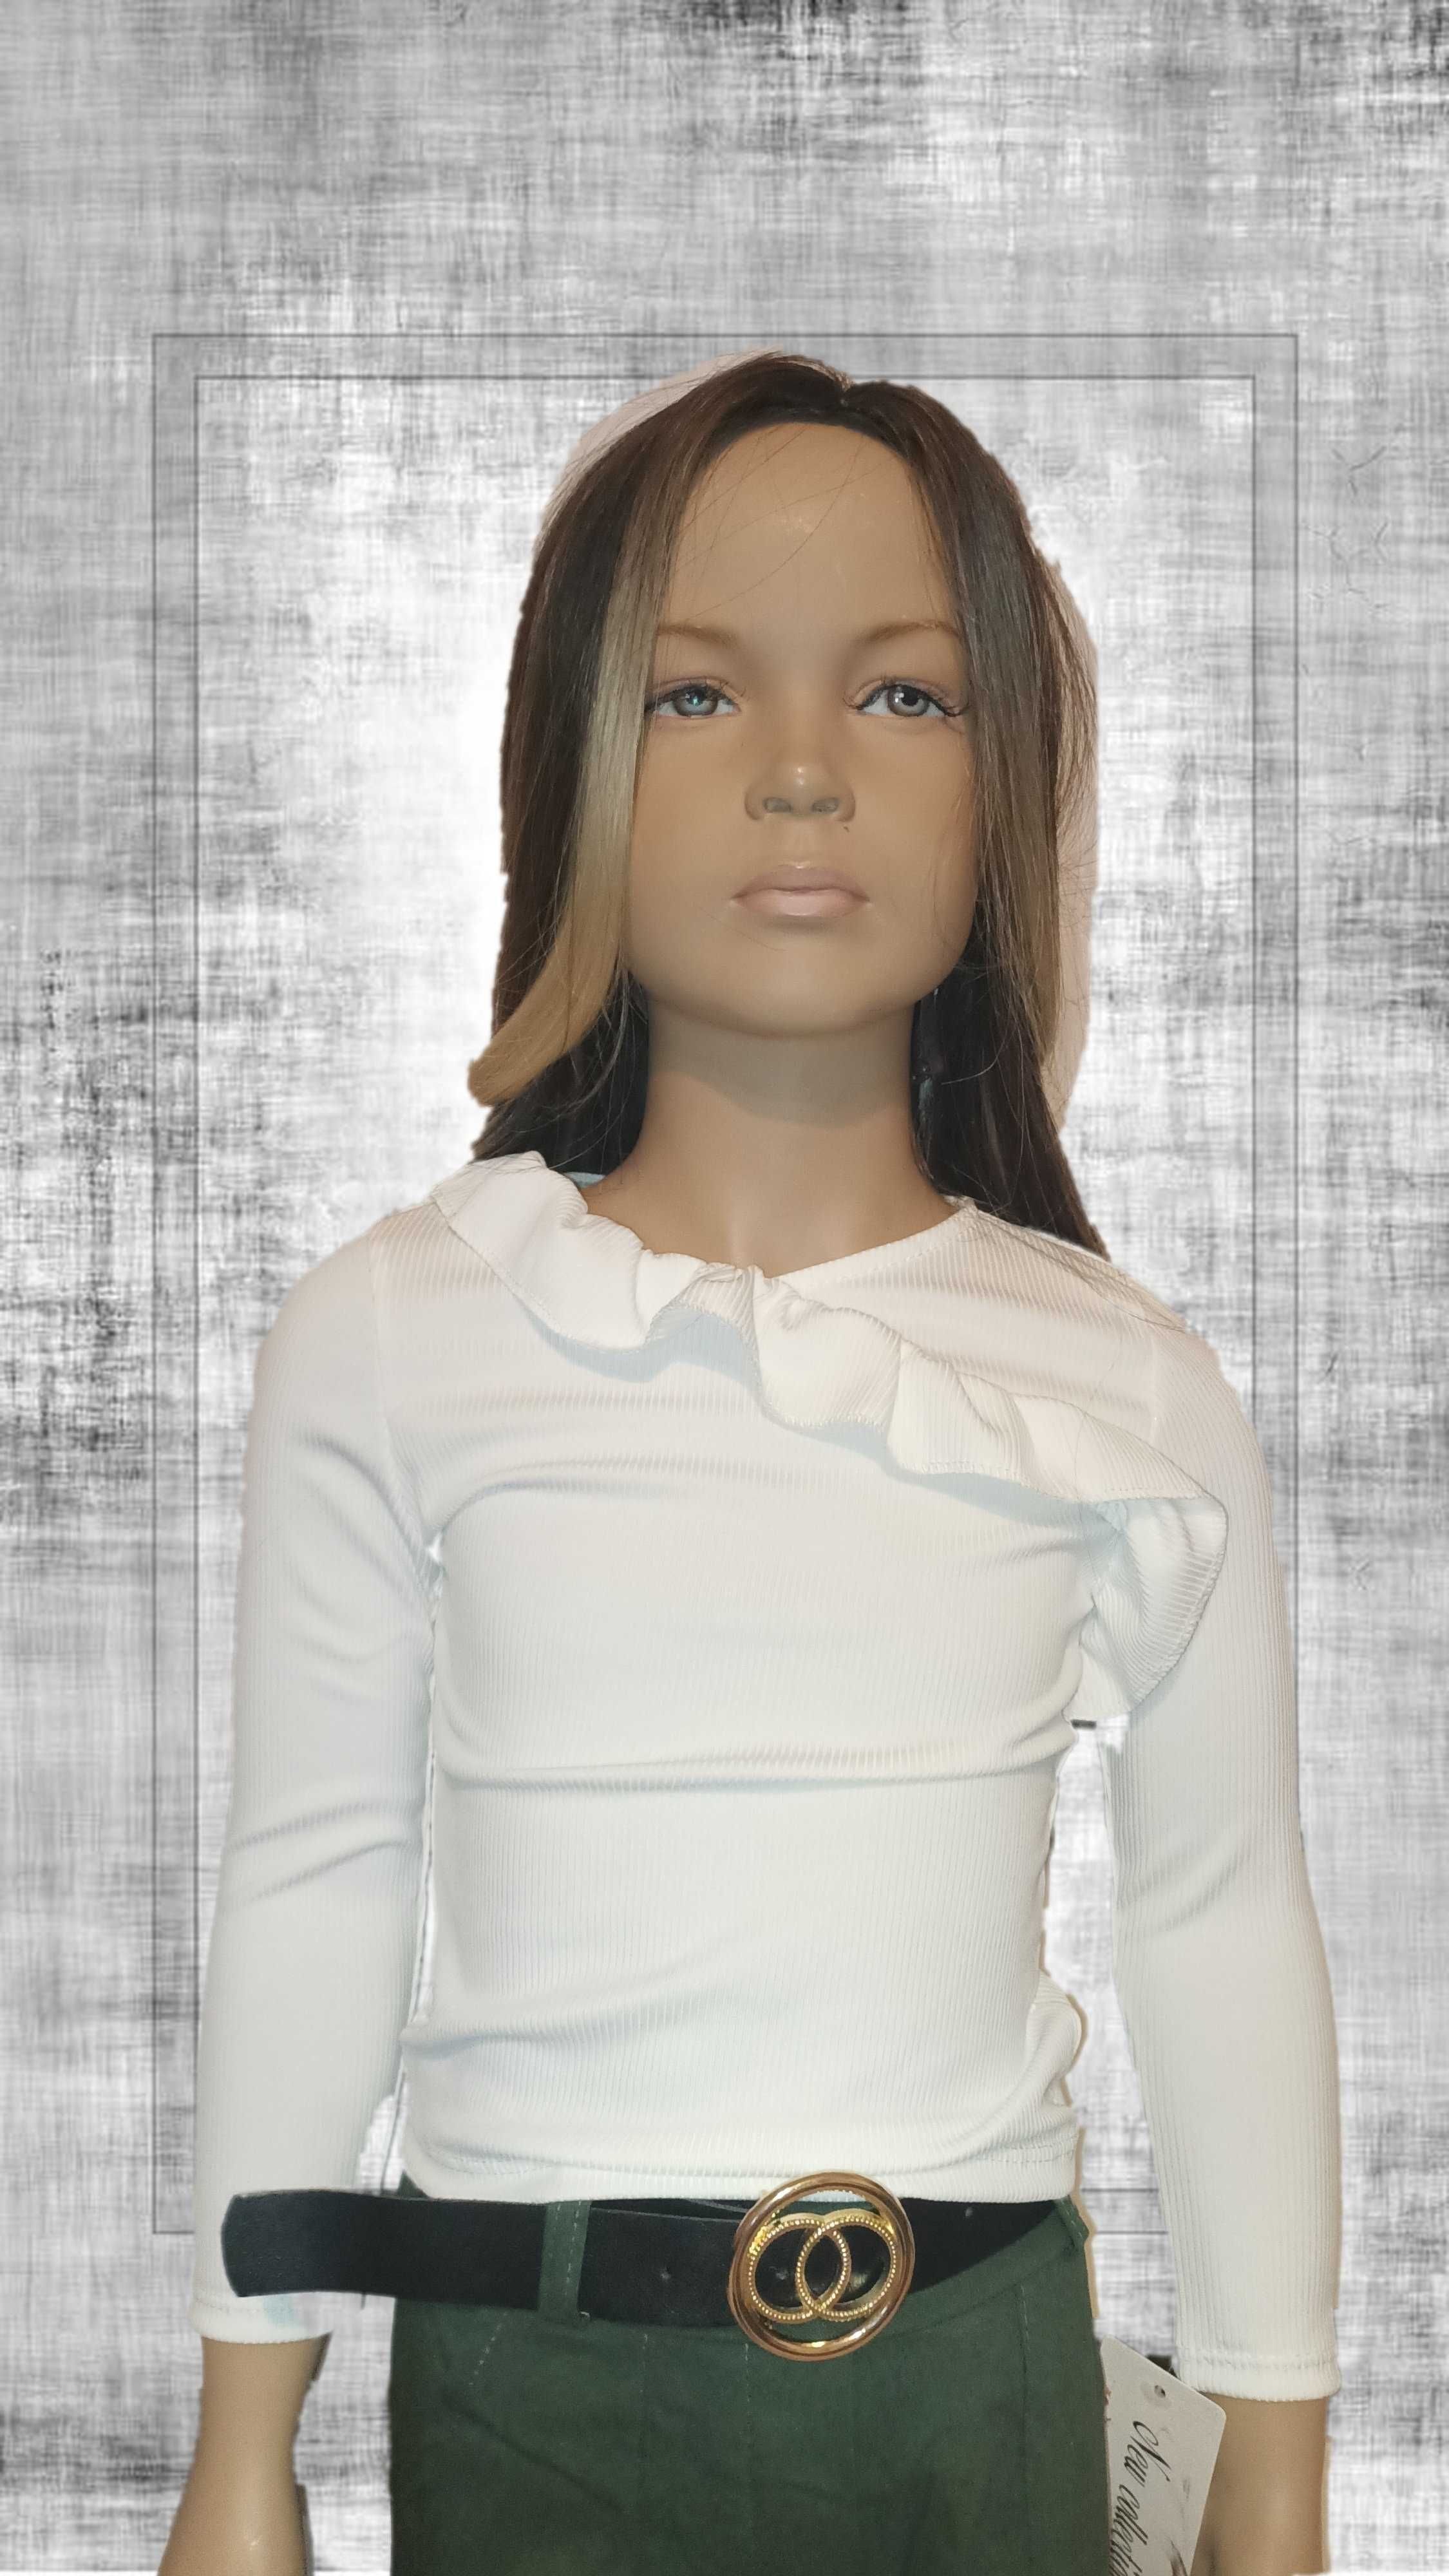 Biała bluzeczka dla dziewczynki w wieku 10 lat